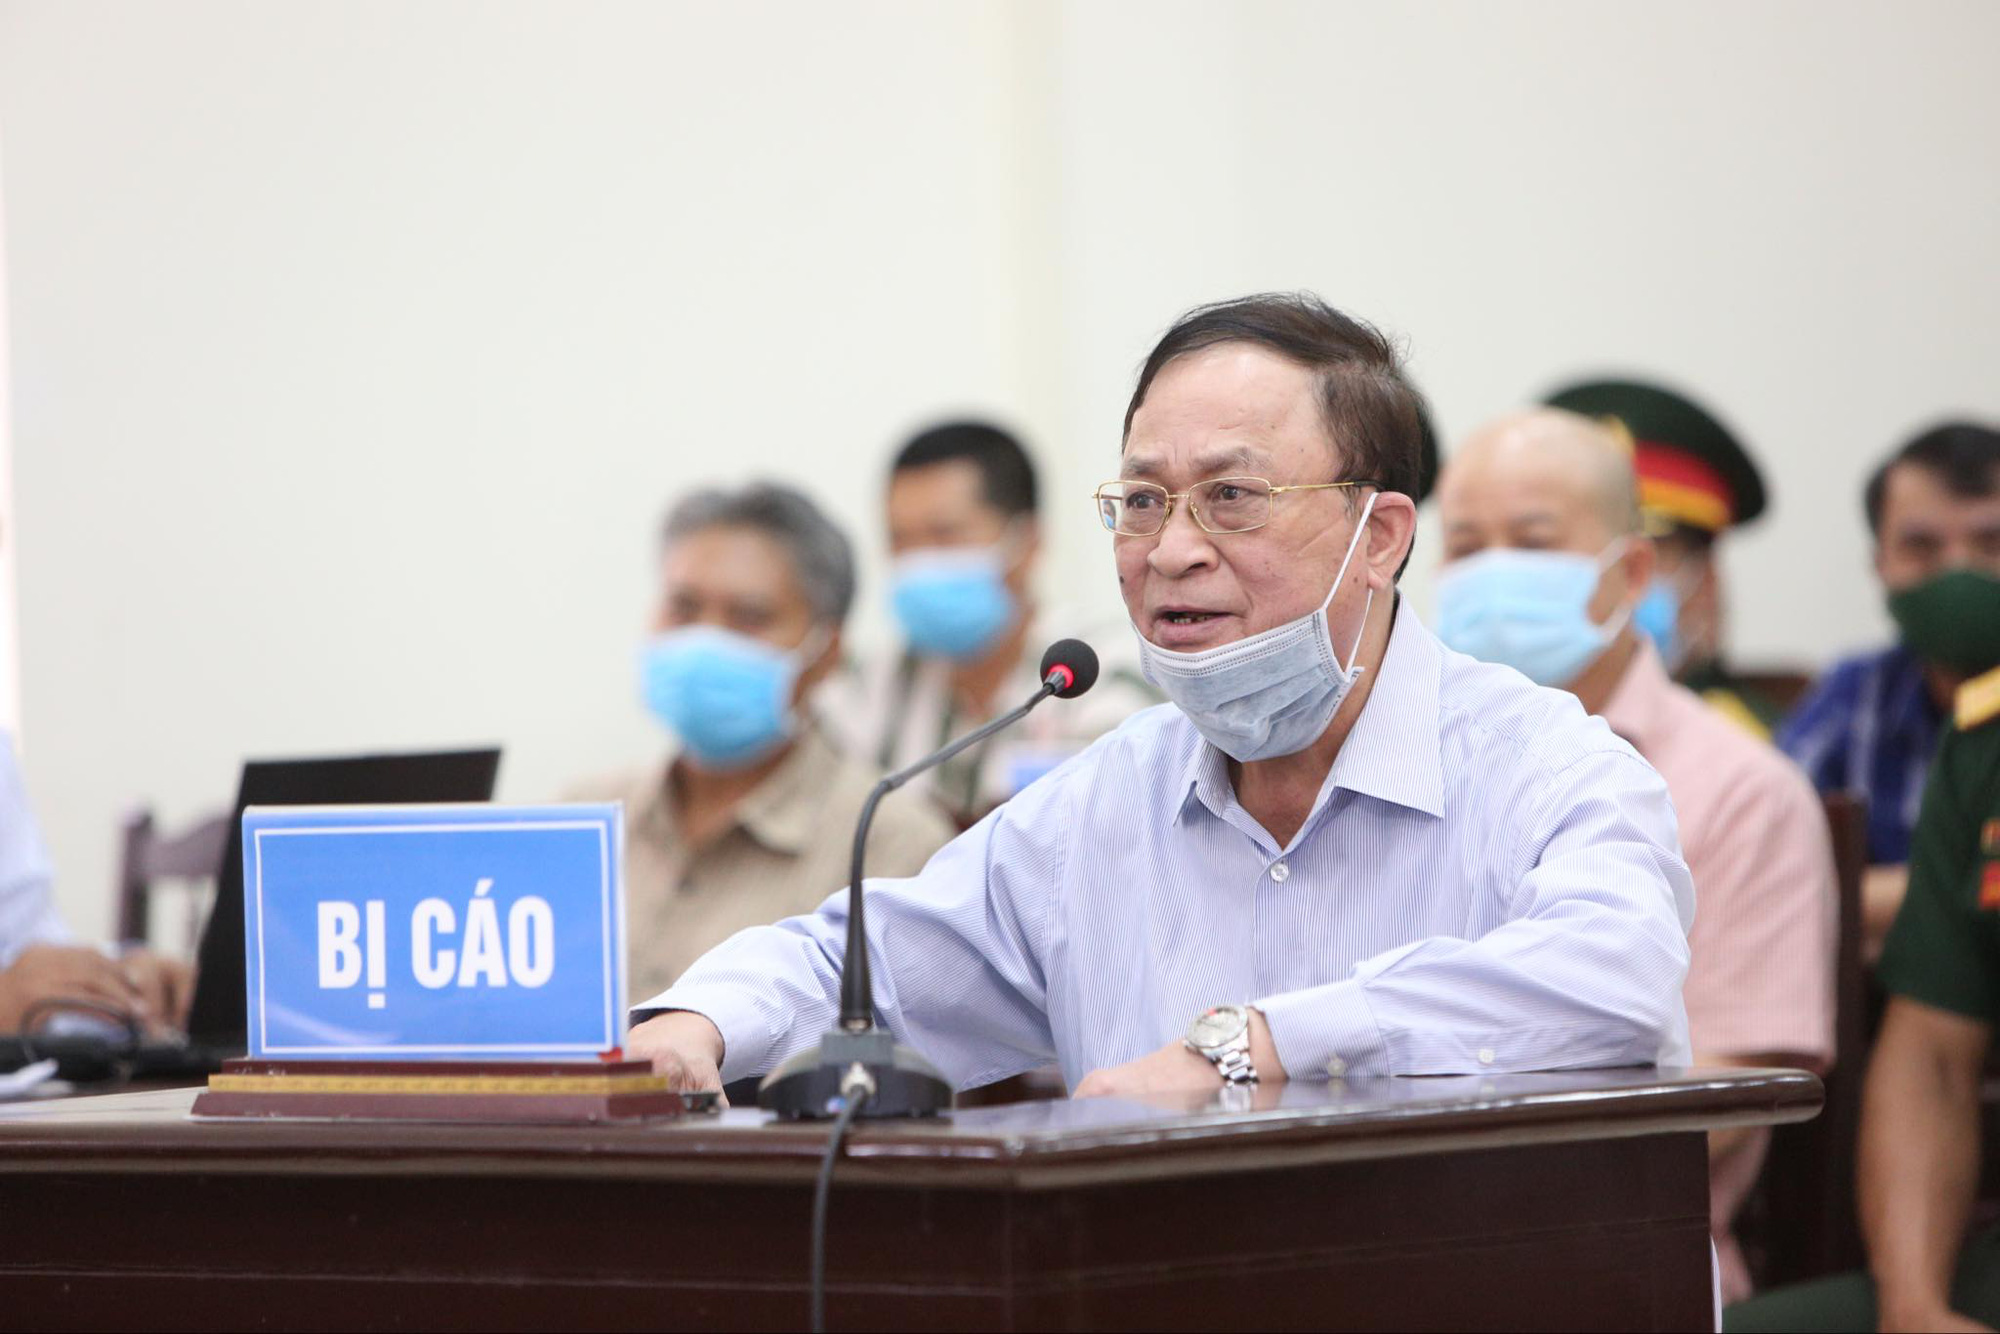 Cựu Thứ trưởng Nguyễn Văn Hiến và 4 đại tá ra tòa với những tình tiết giảm nhẹ nào? - Ảnh 1.